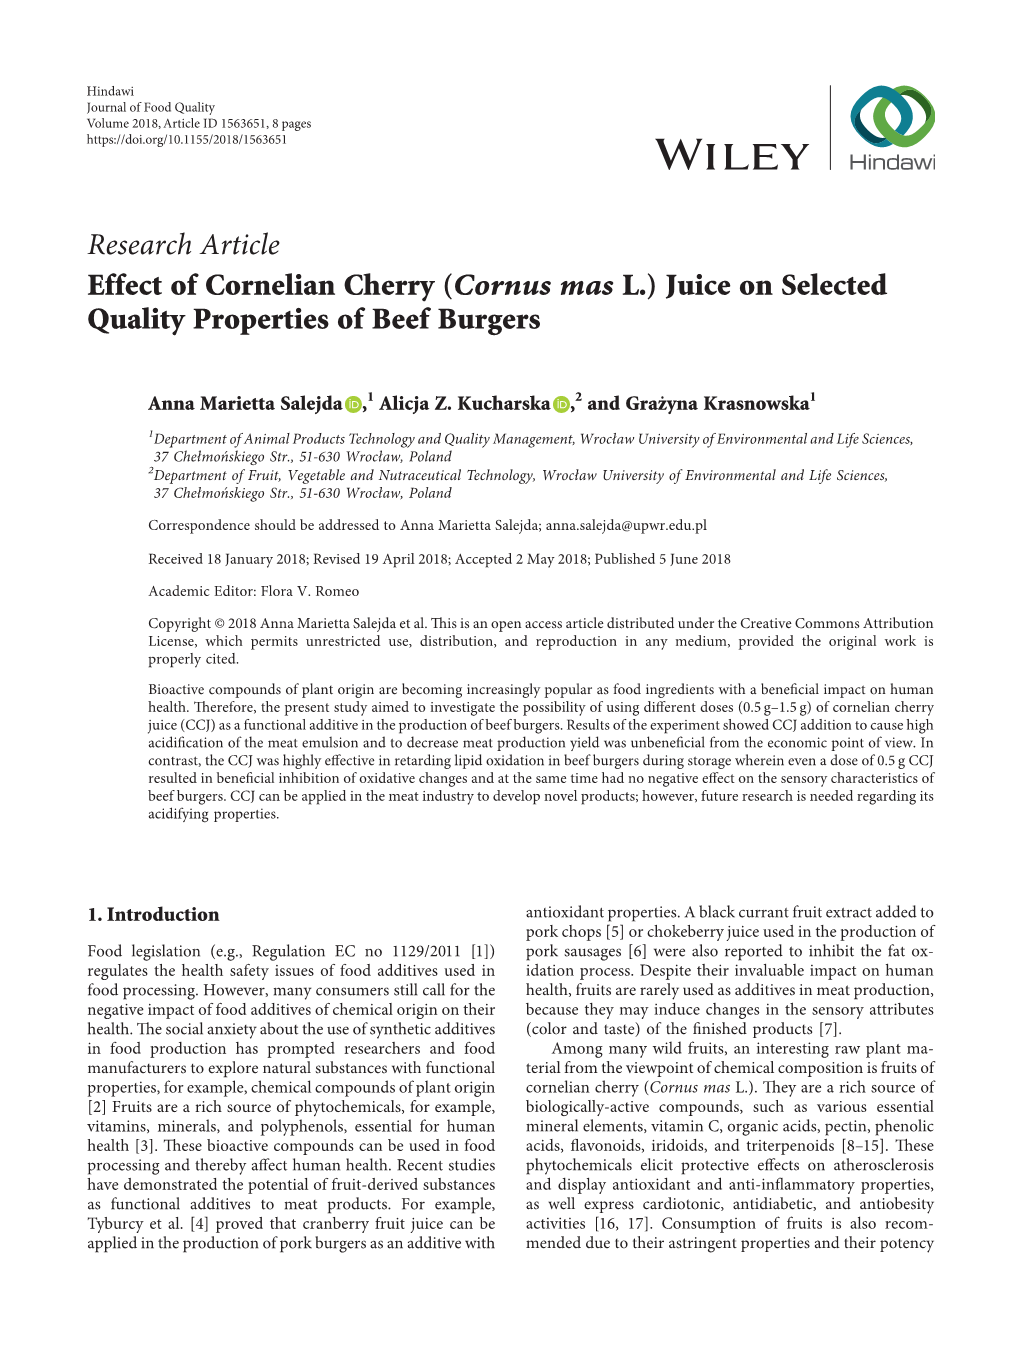 Cornus Mas L.) Juice on Selected Quality Properties of Beef Burgers